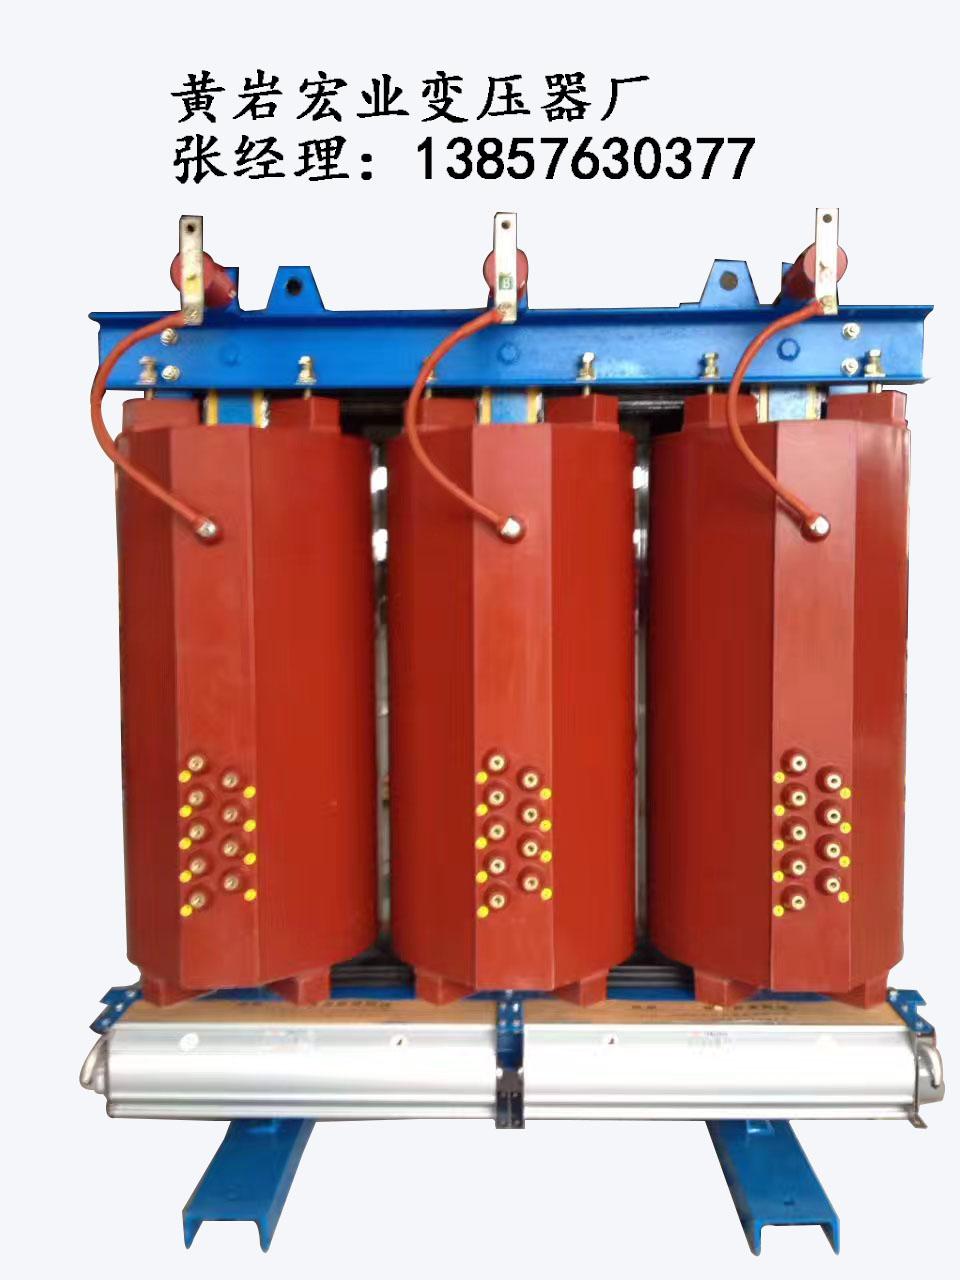 生产非晶合金变压器浙江黄岩宏业变压器厂